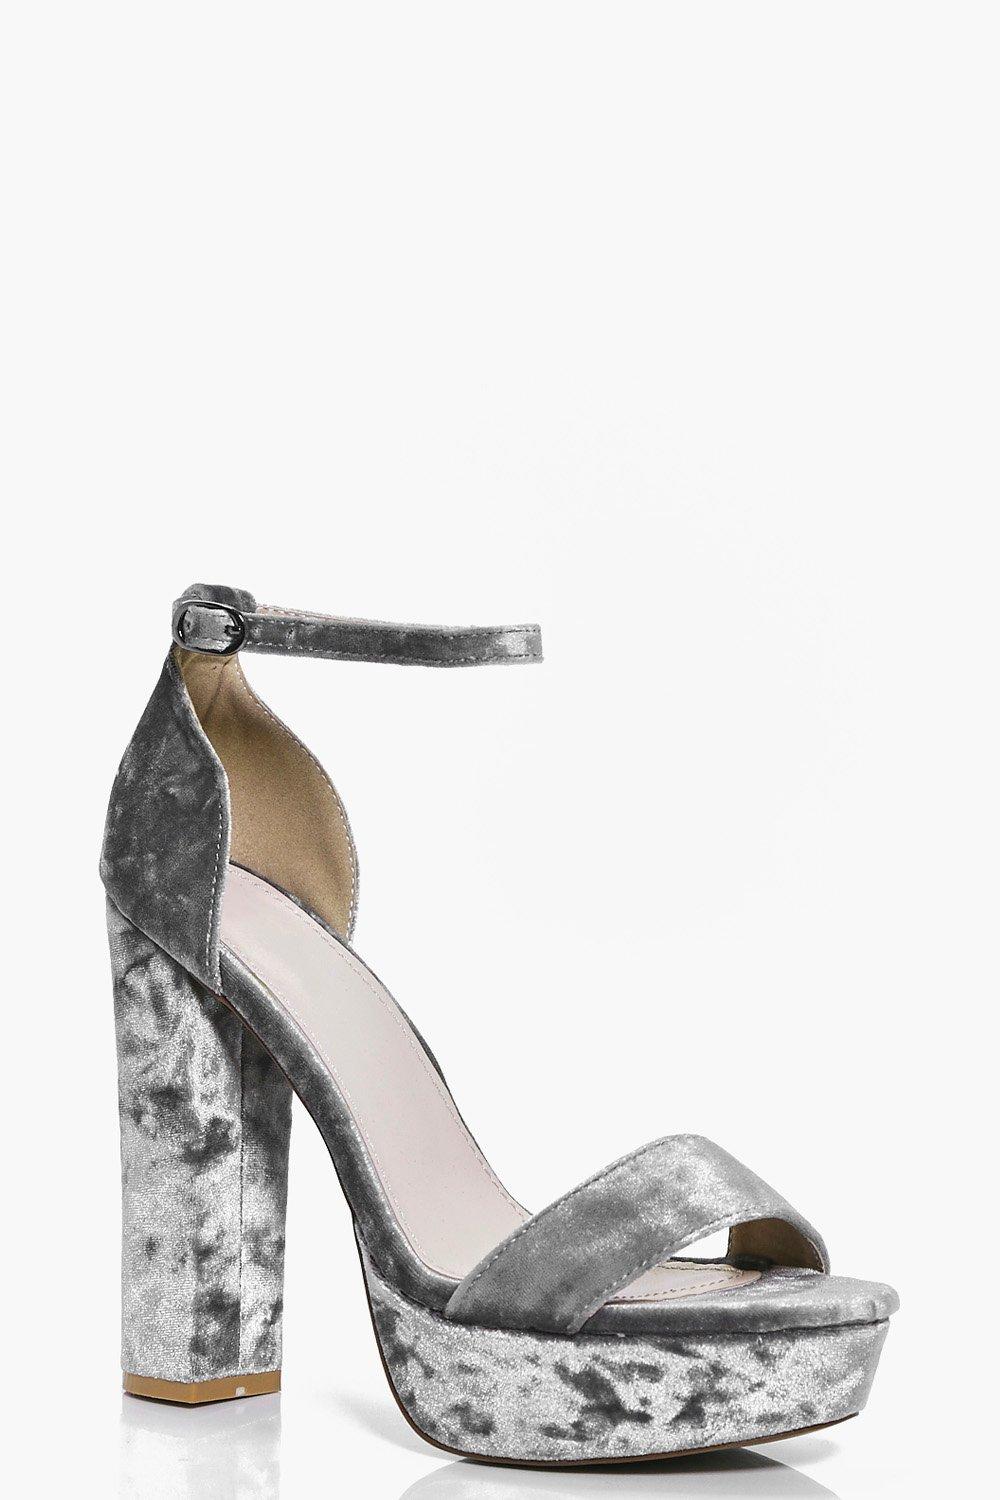 Sandalias en terciopelo gris